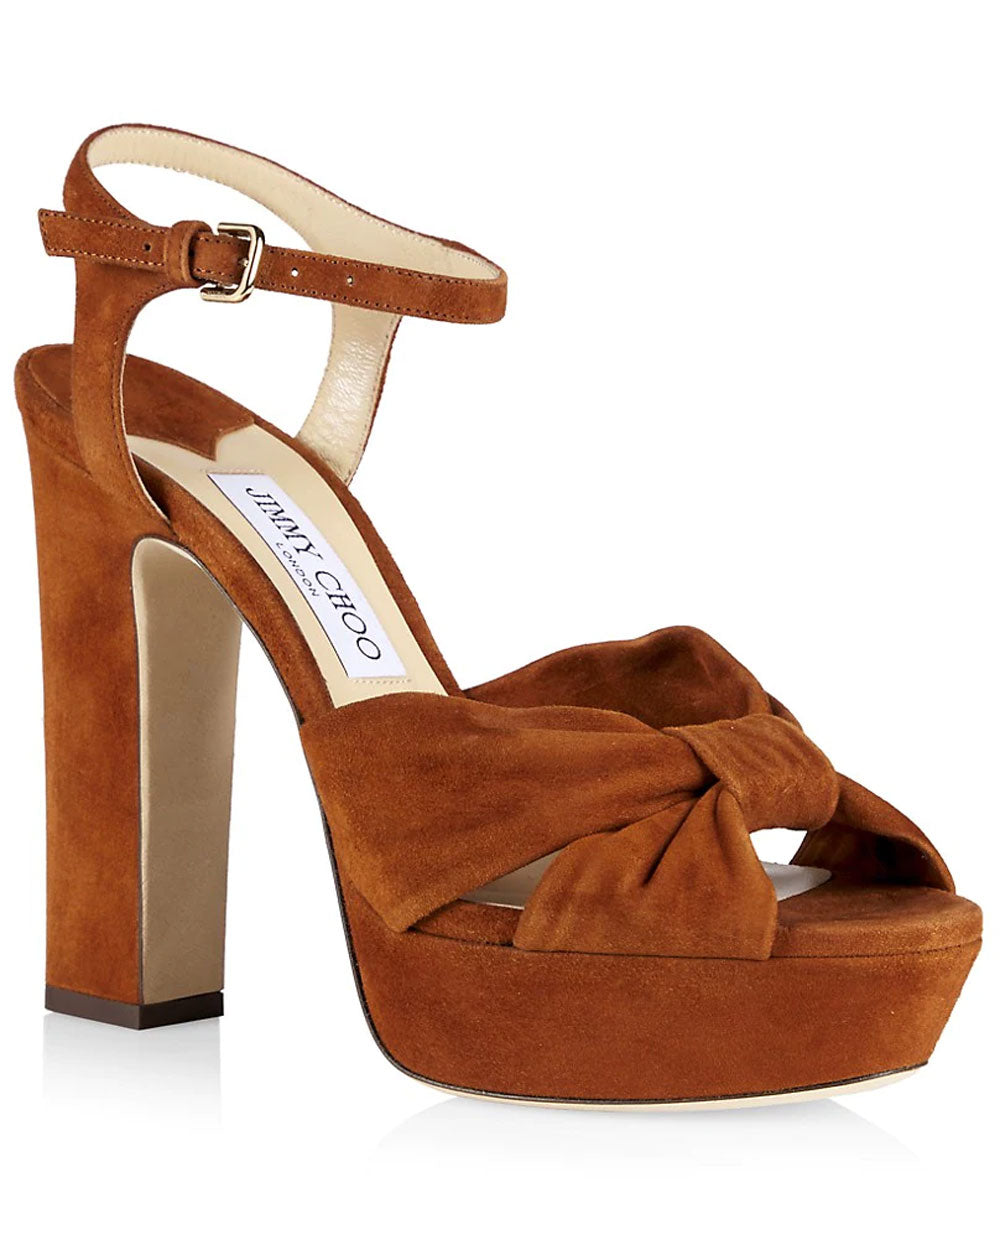 Heloise Knot Platform Sandal in Tan